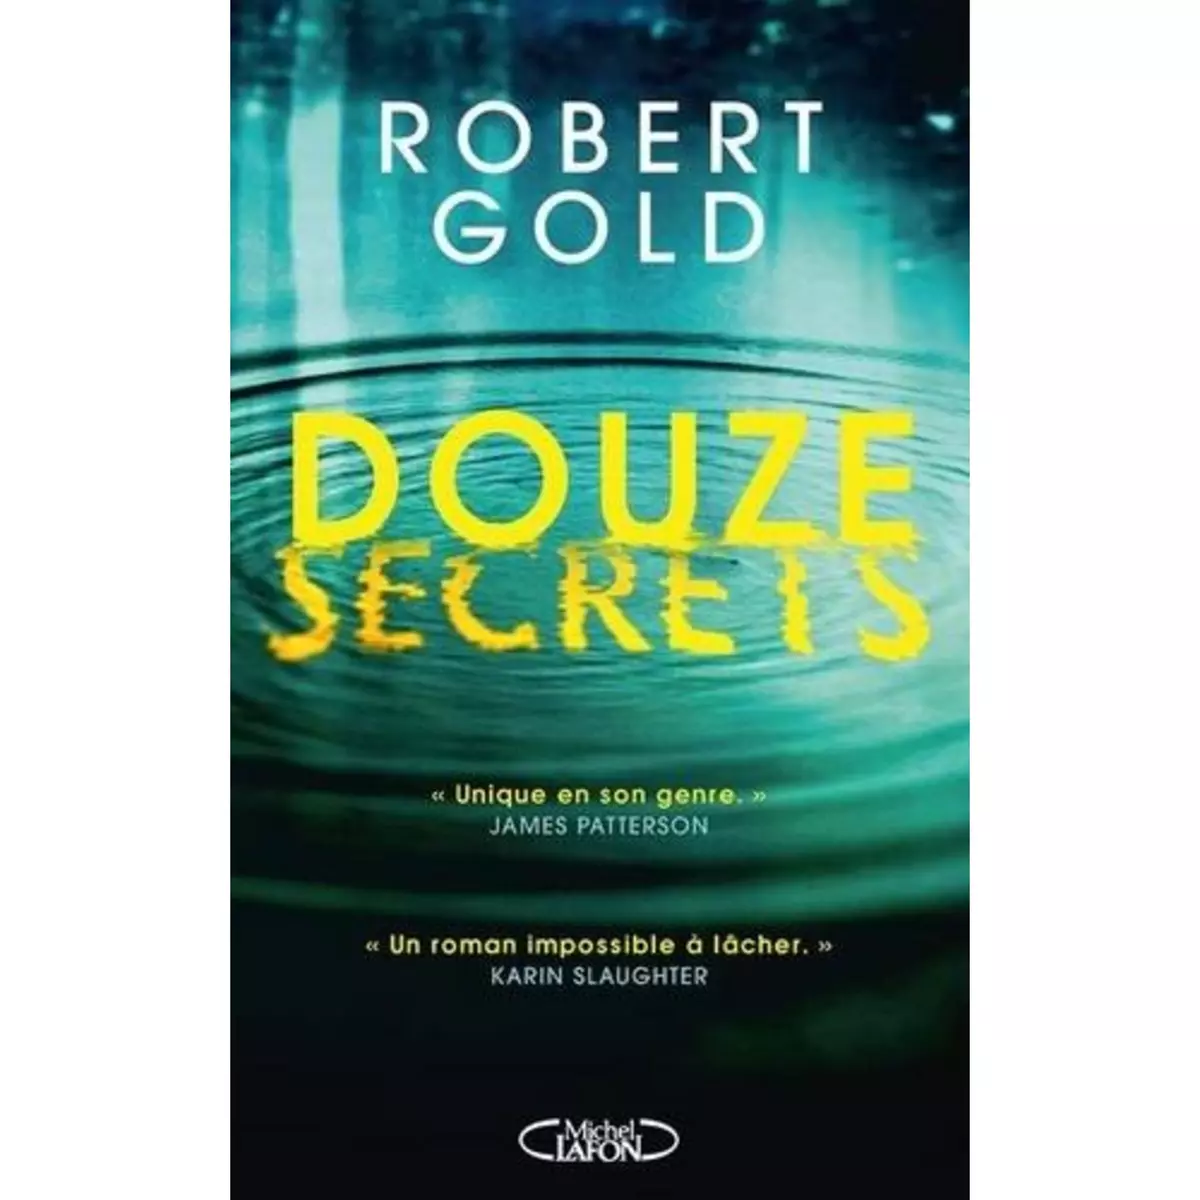  DOUZE SECRETS, Gold Robert